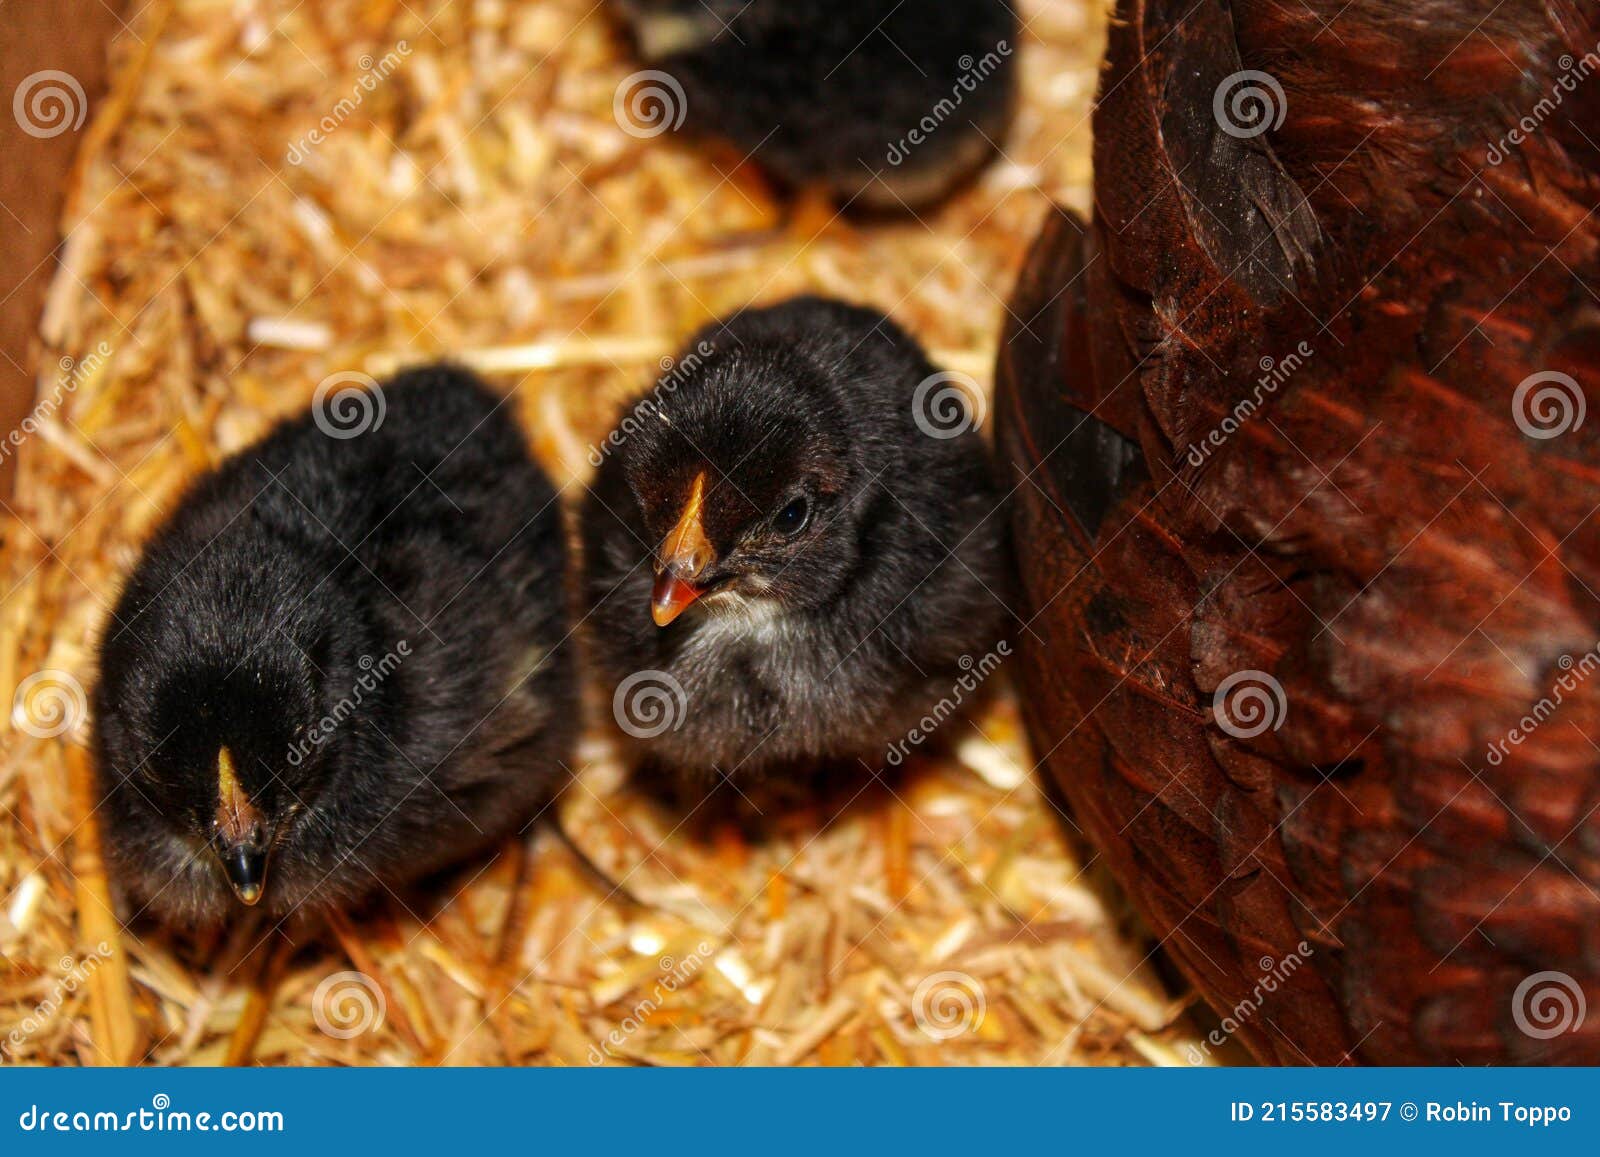 Black Chicks Stock Image Image Of Eyes Beautiful Wildlife 215583497